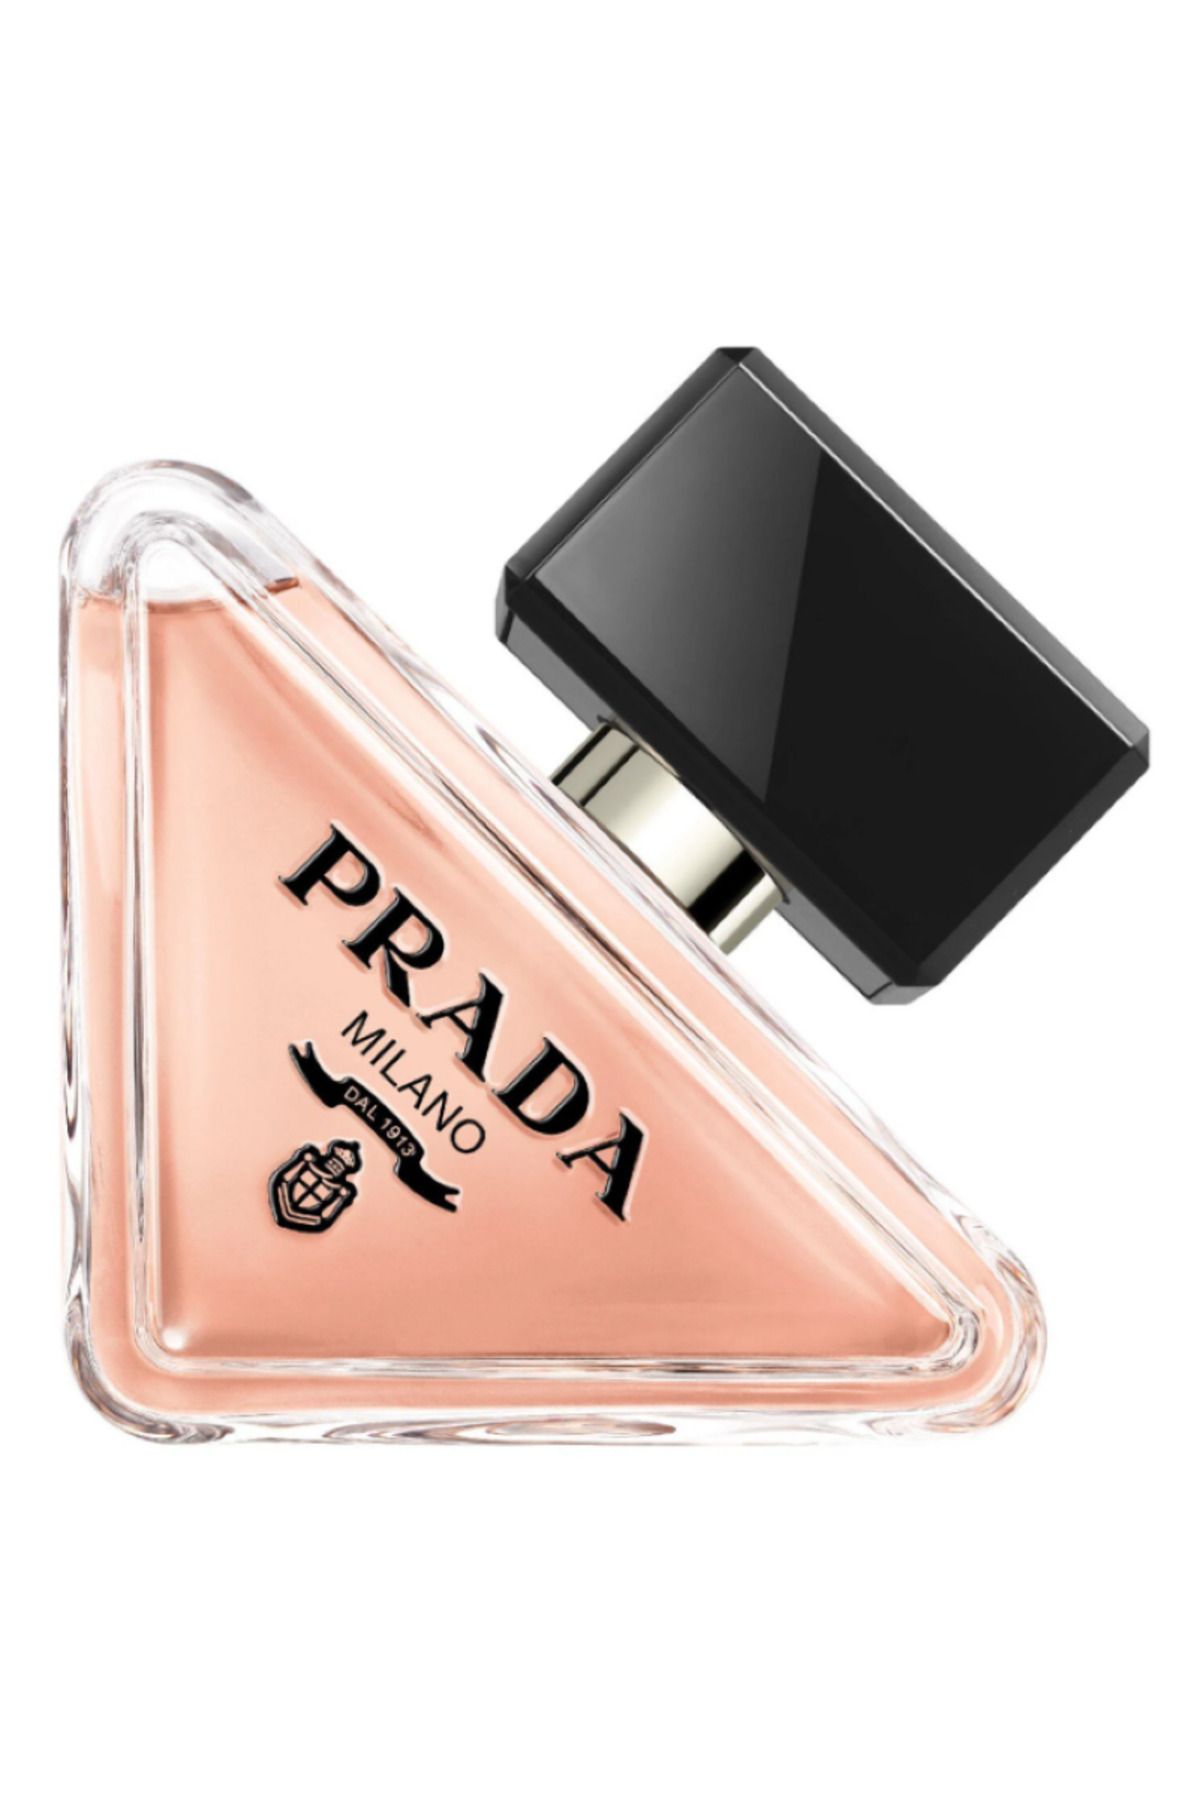 Prada Paradoxe - Eau De Parfum Asla aynı olmamanın ve her zaman kendin olmanın kutlaması 50 ml